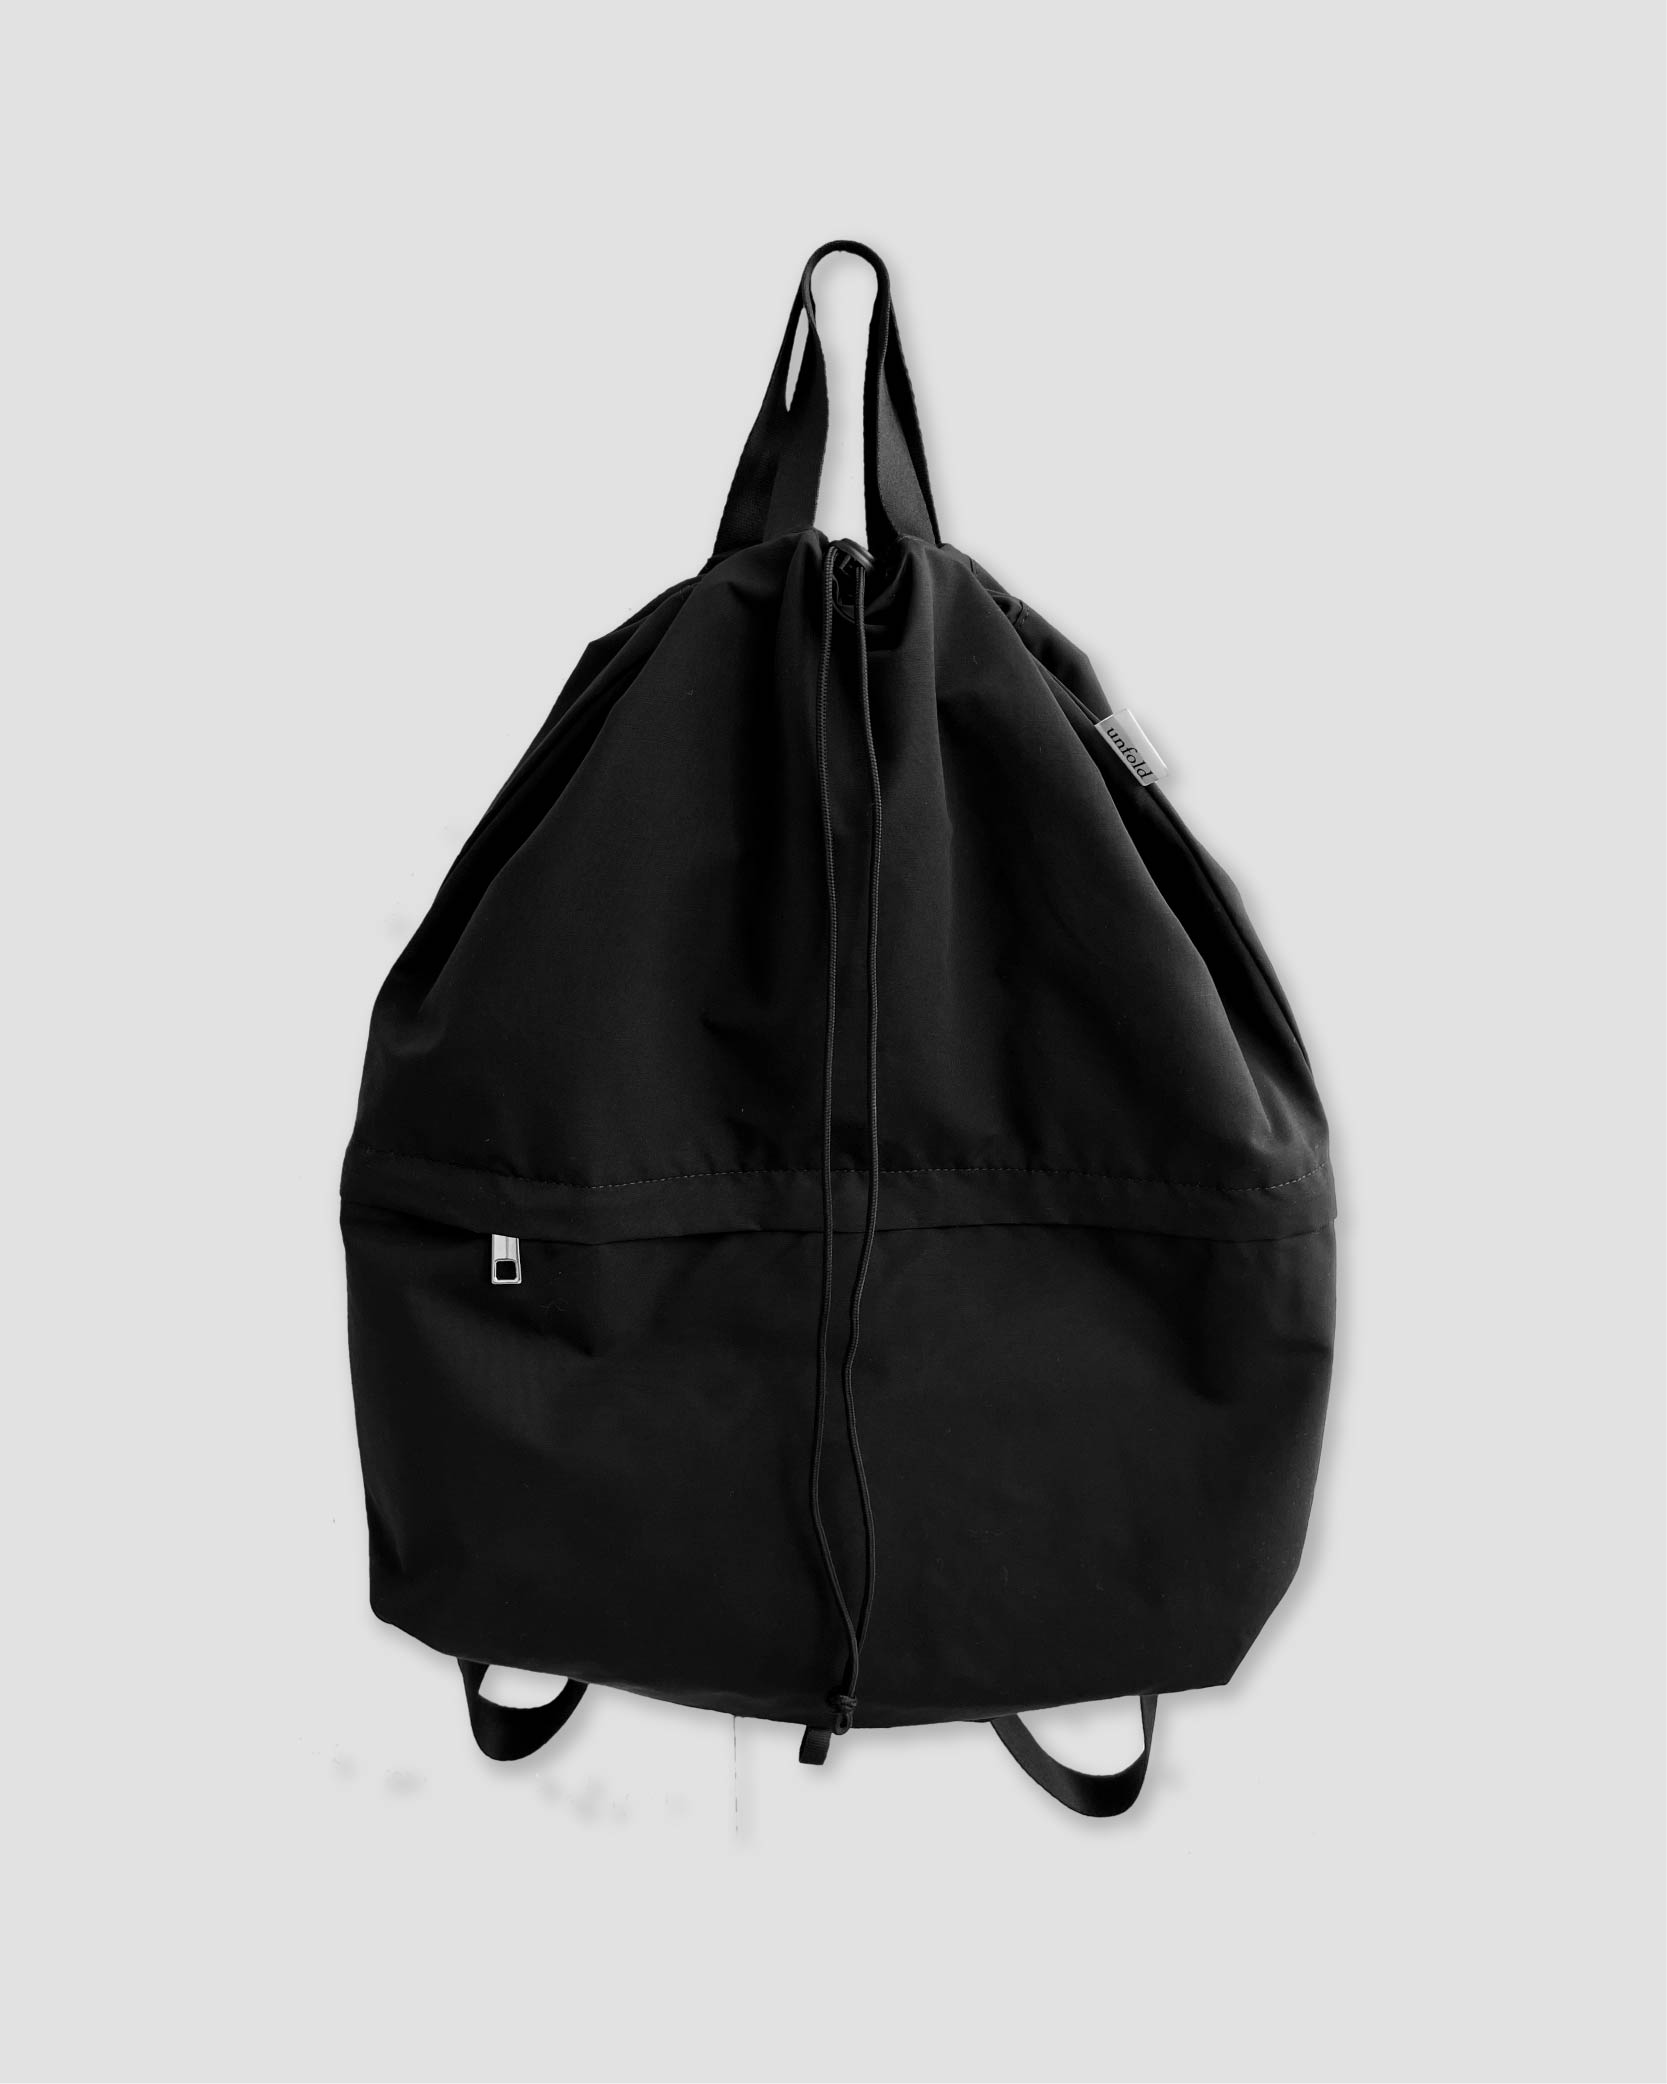 언폴드,unfold,에코백,파우치,천가방,친환경가방,[3/3 예약배송] String backpack (Black)